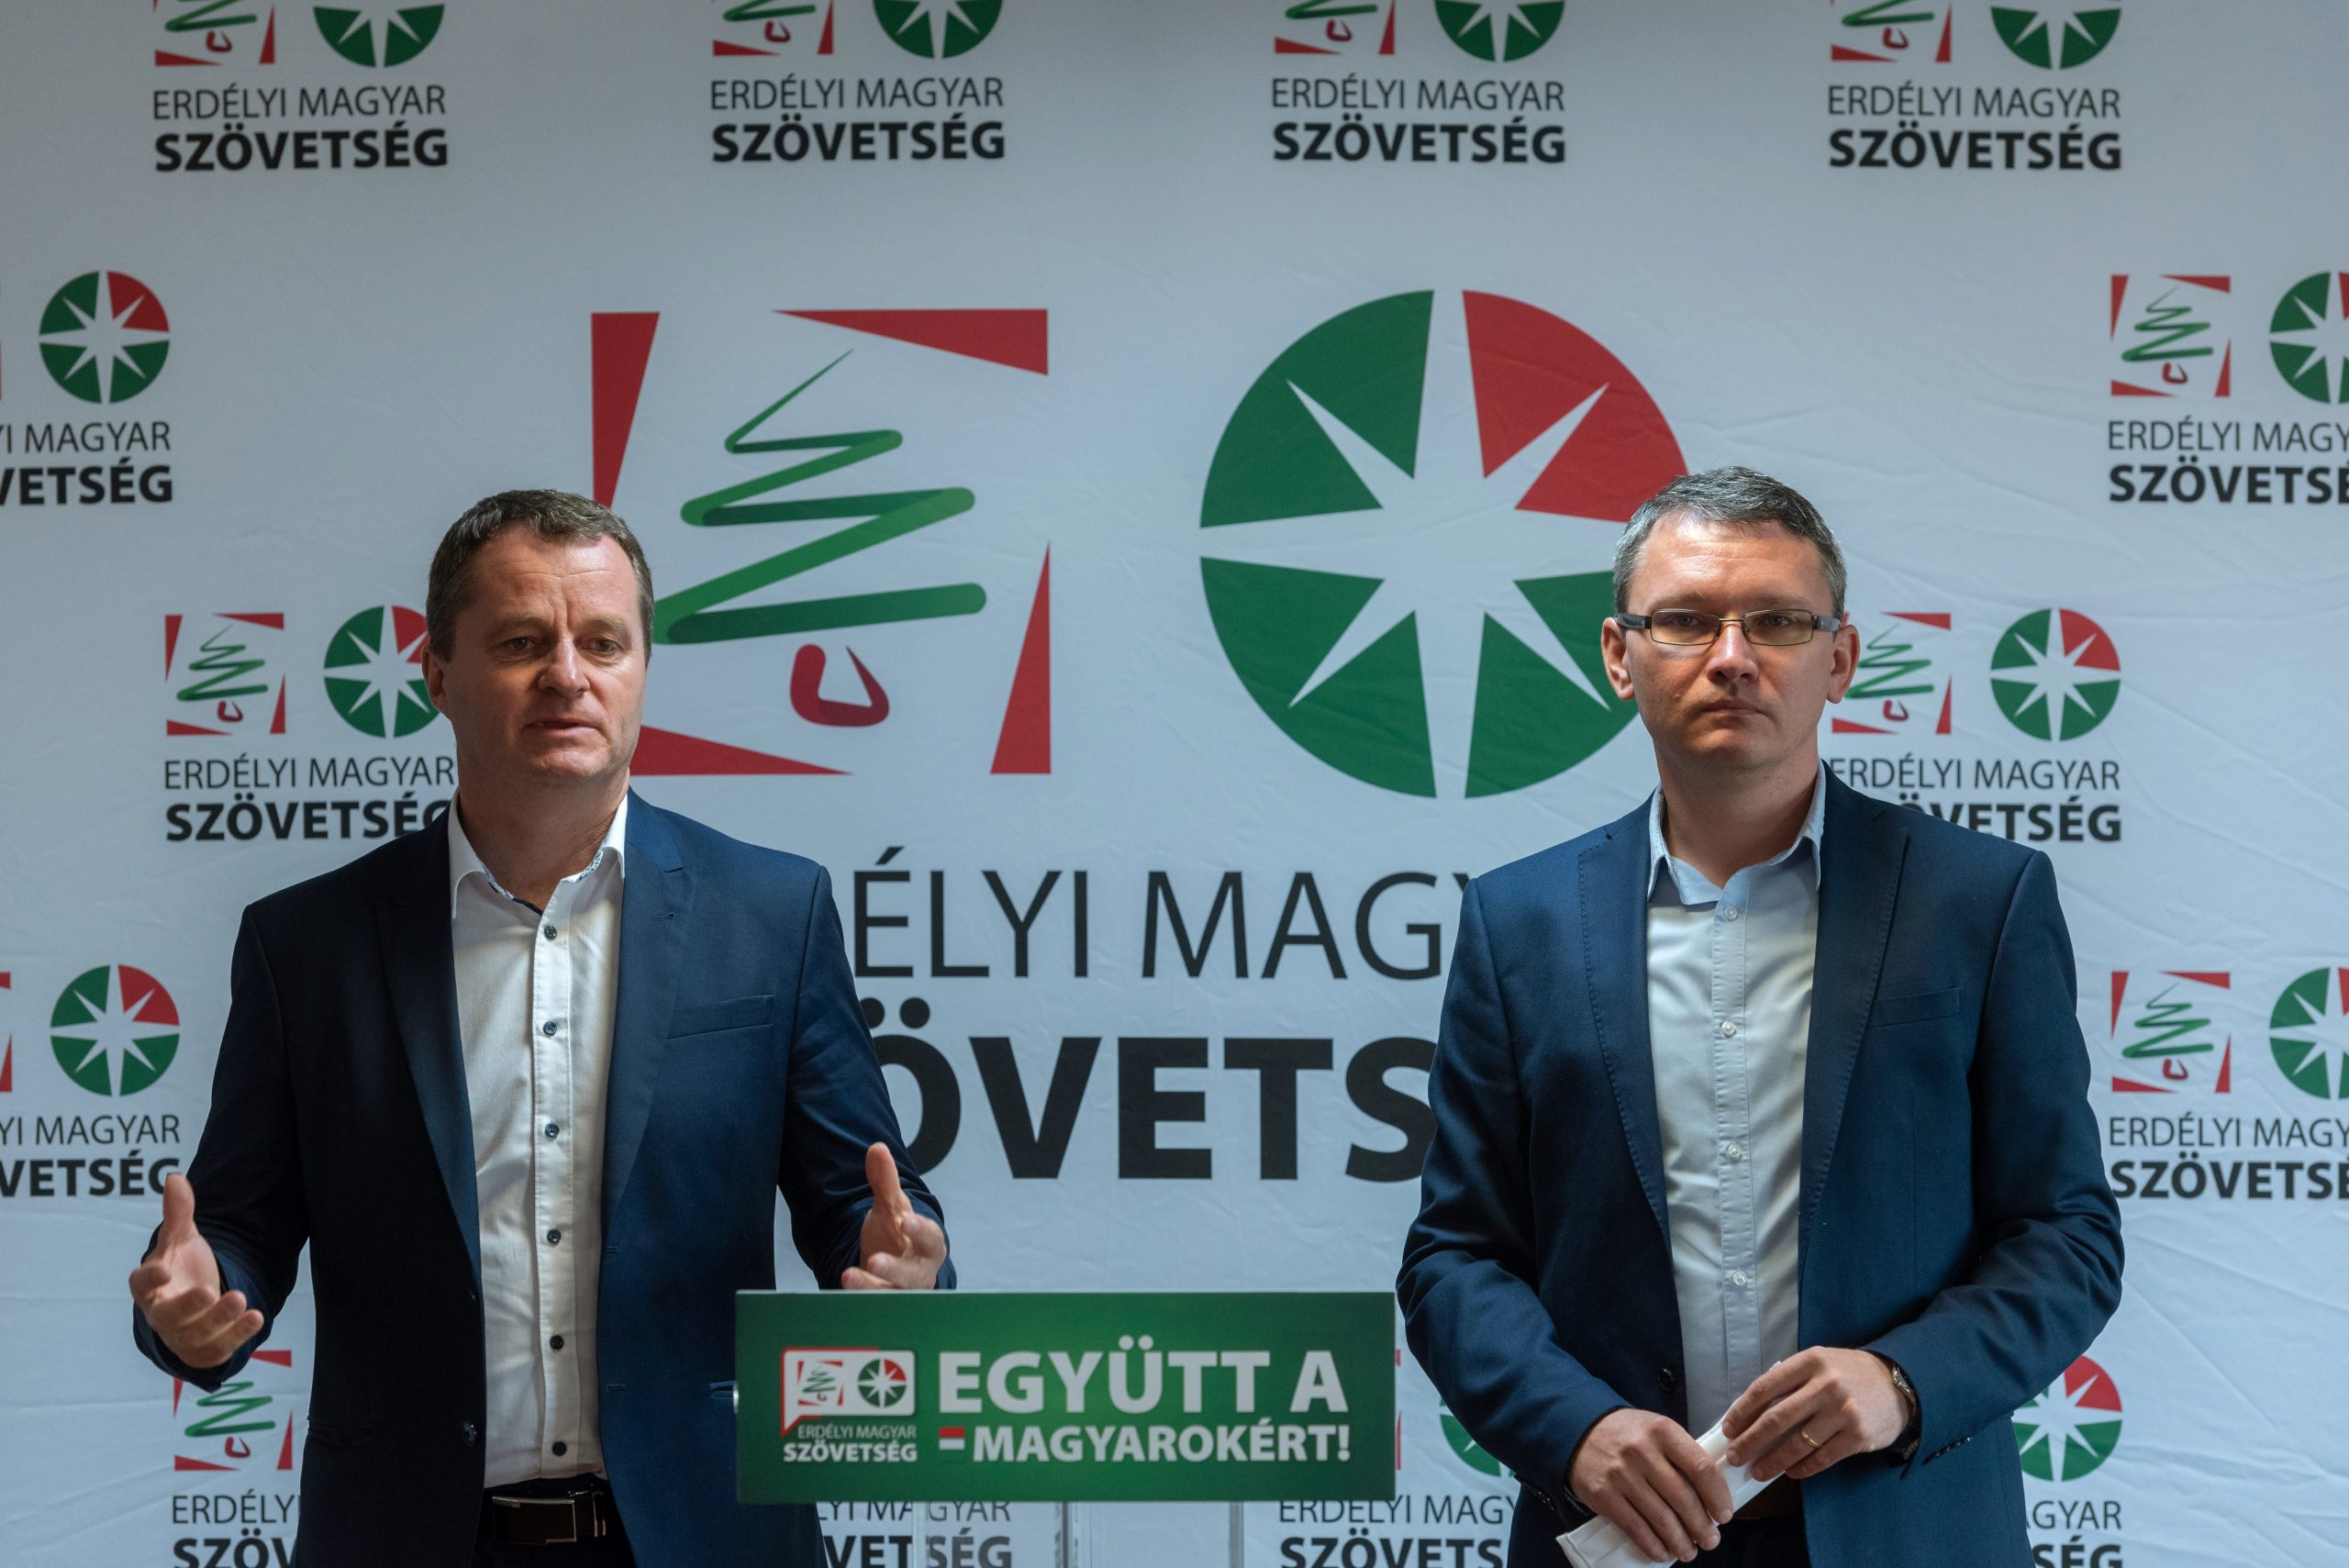 Gerichtshof untersagt Zusammenschluss zweier ungarischer Parteien in Rumänien